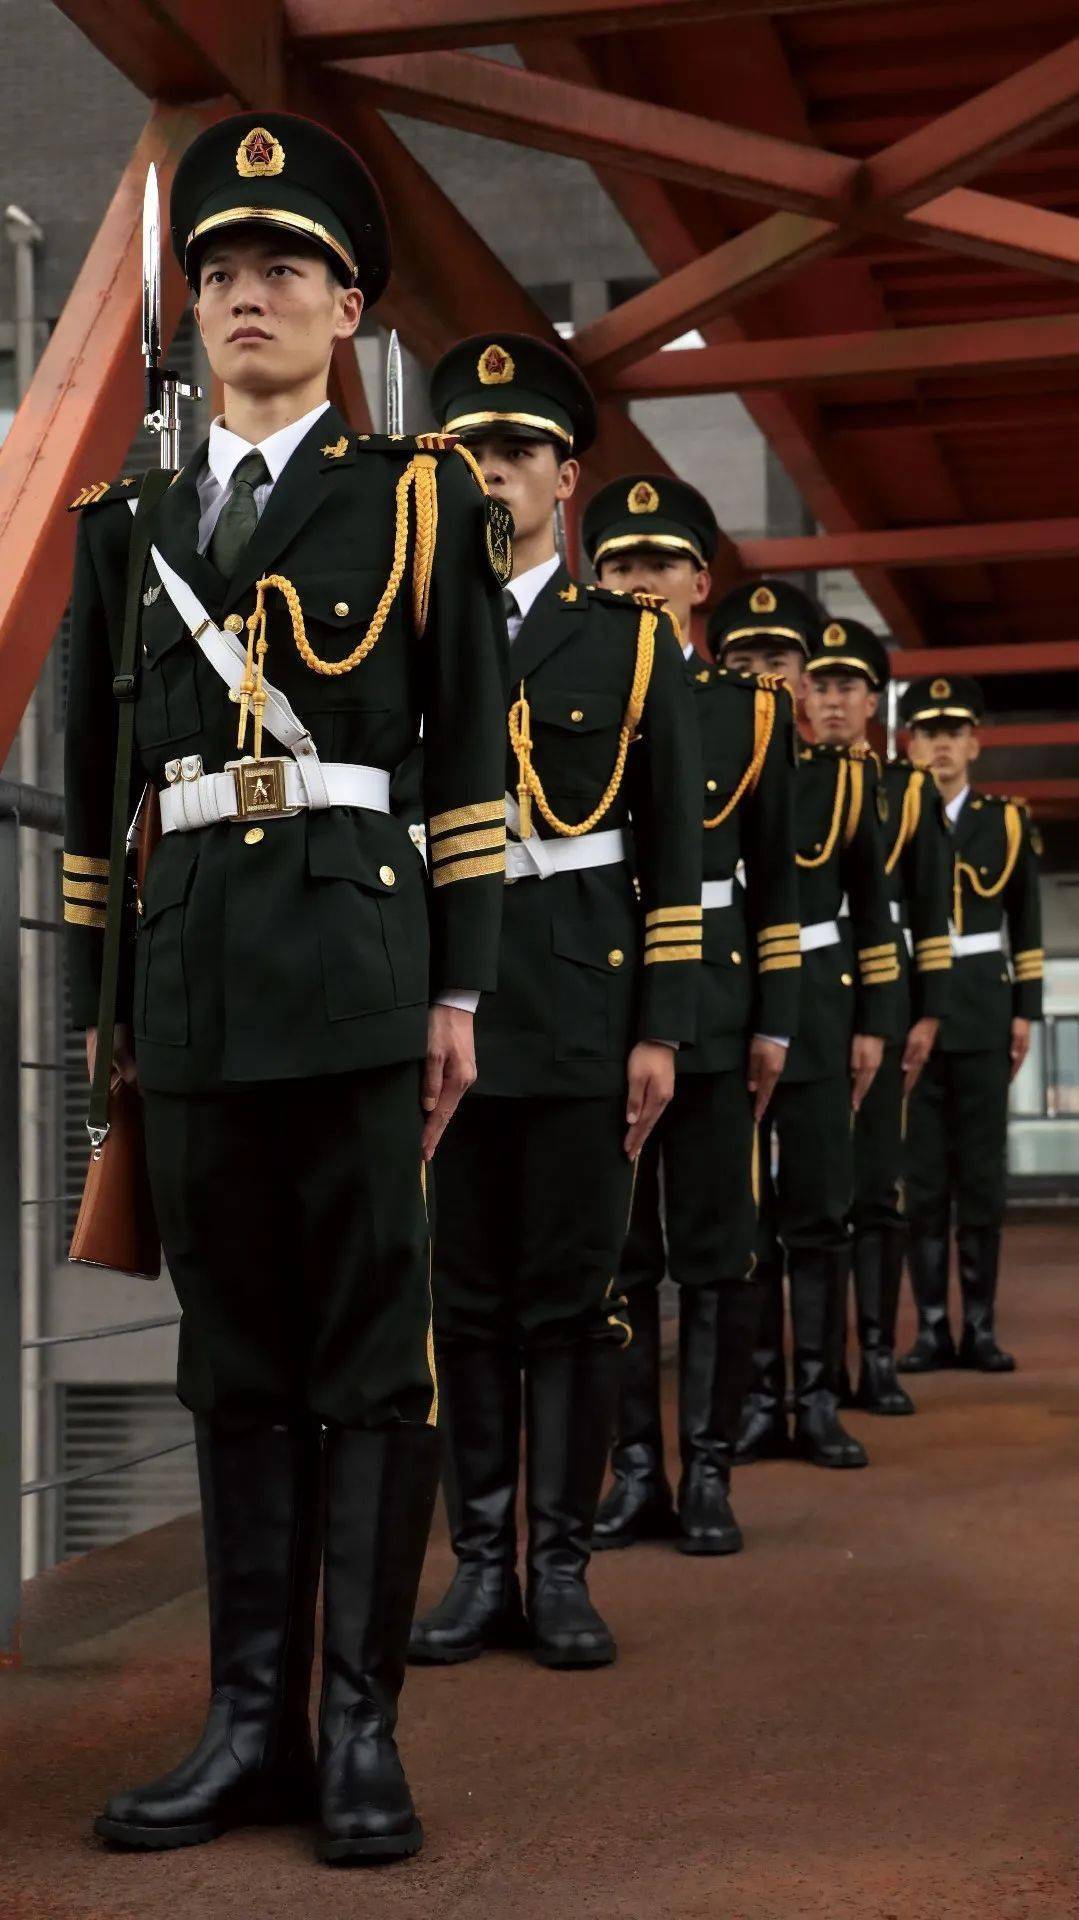 国旗护卫队的服装图片